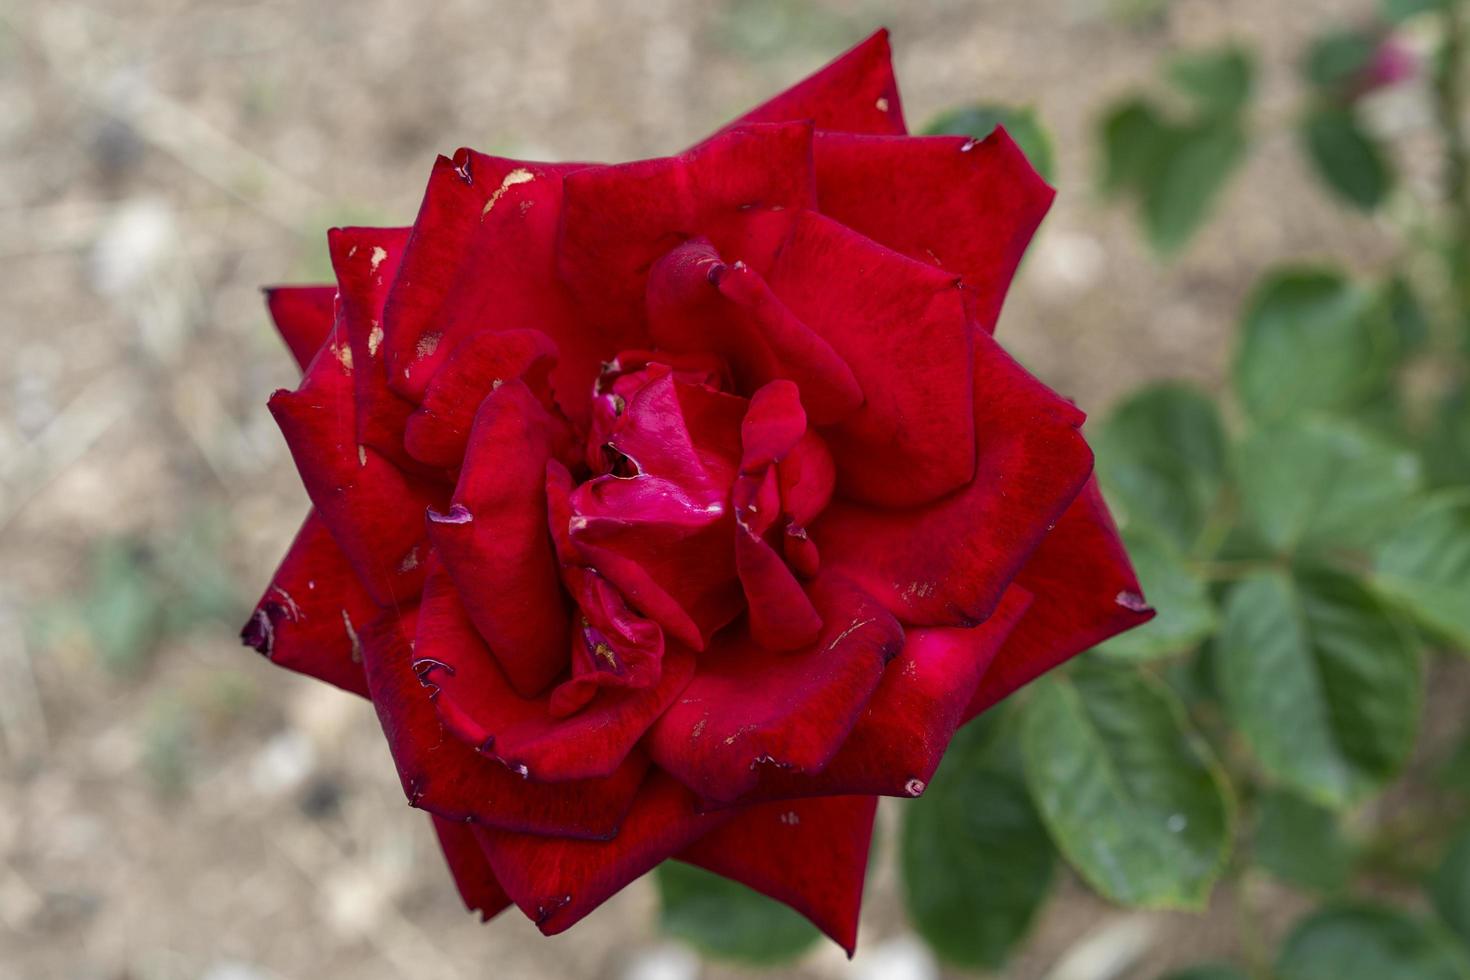 close-up op rode rozen foto